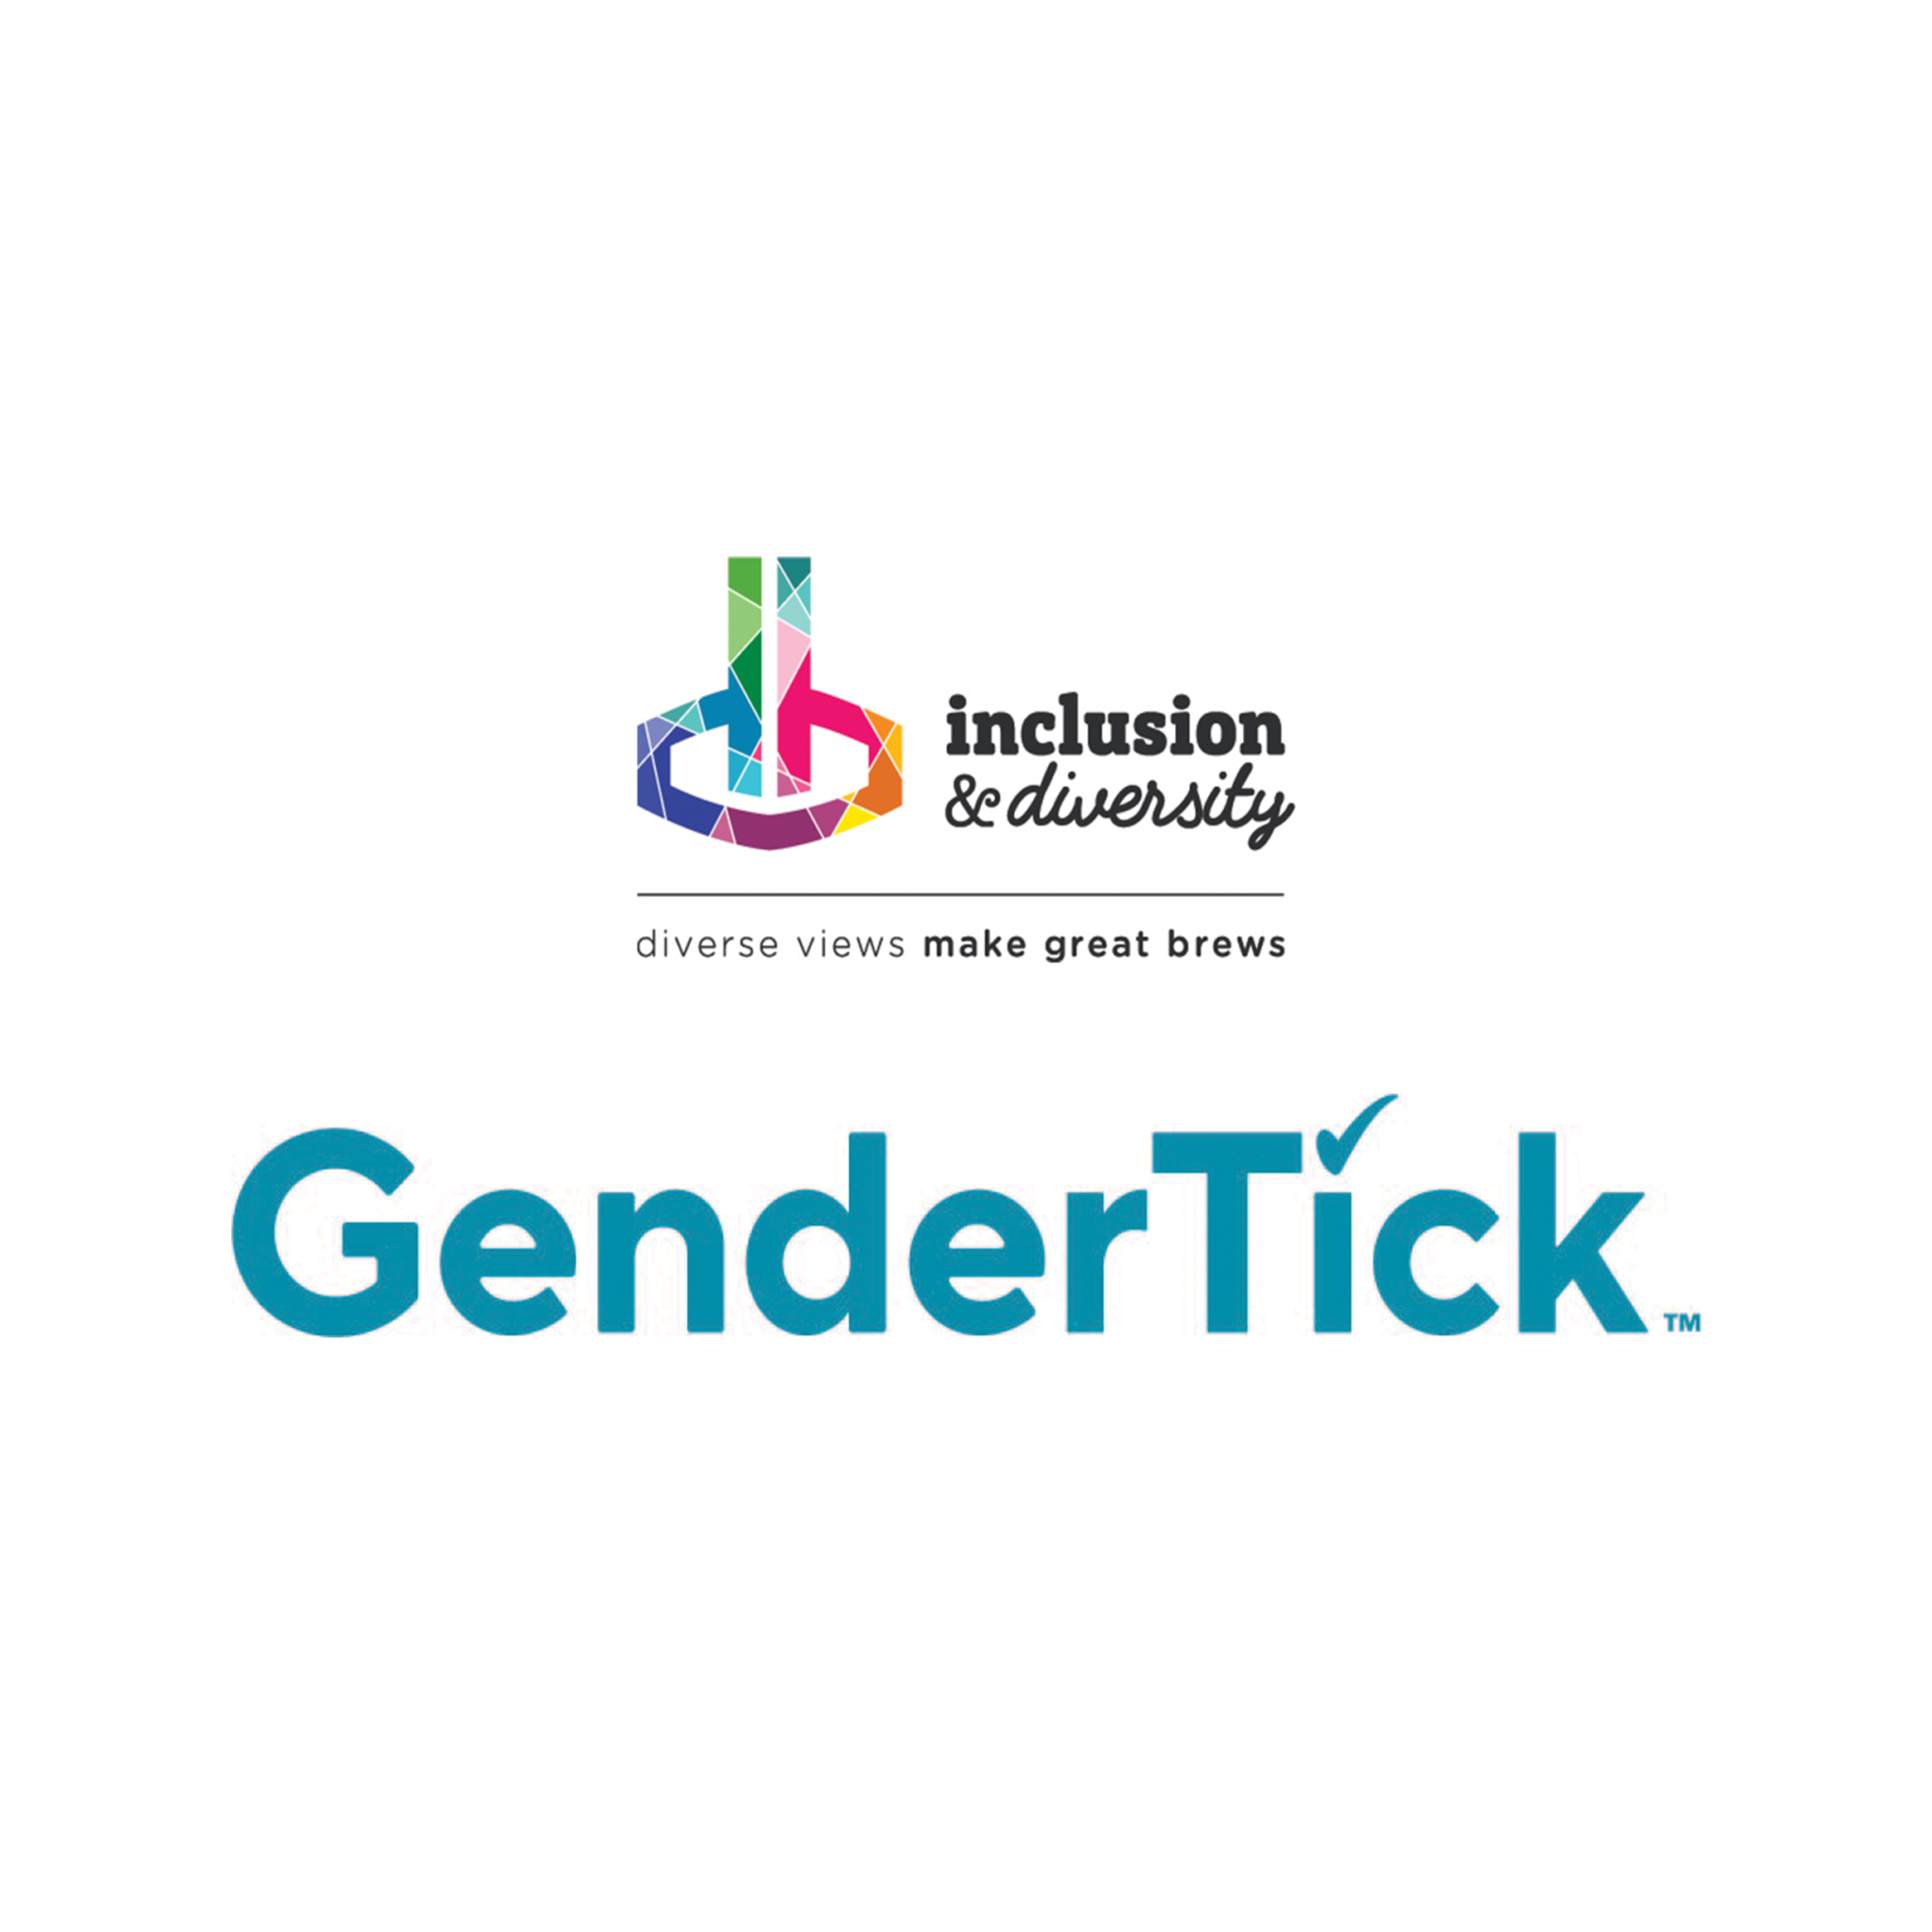 I&D + Gendertick